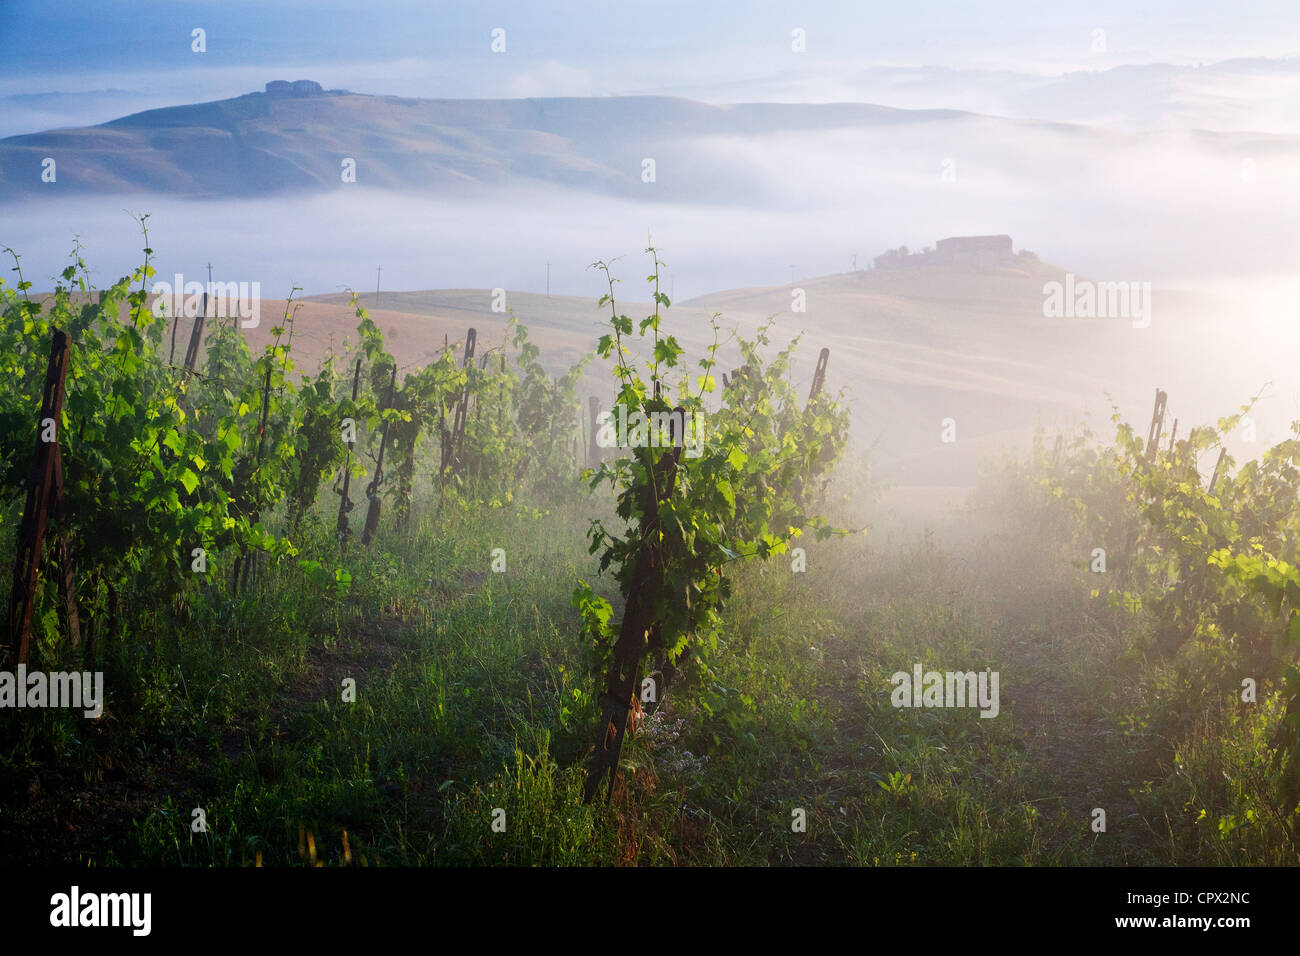 Vineyard, ponte d arbia, siena, tuscany, italy Stock Photo